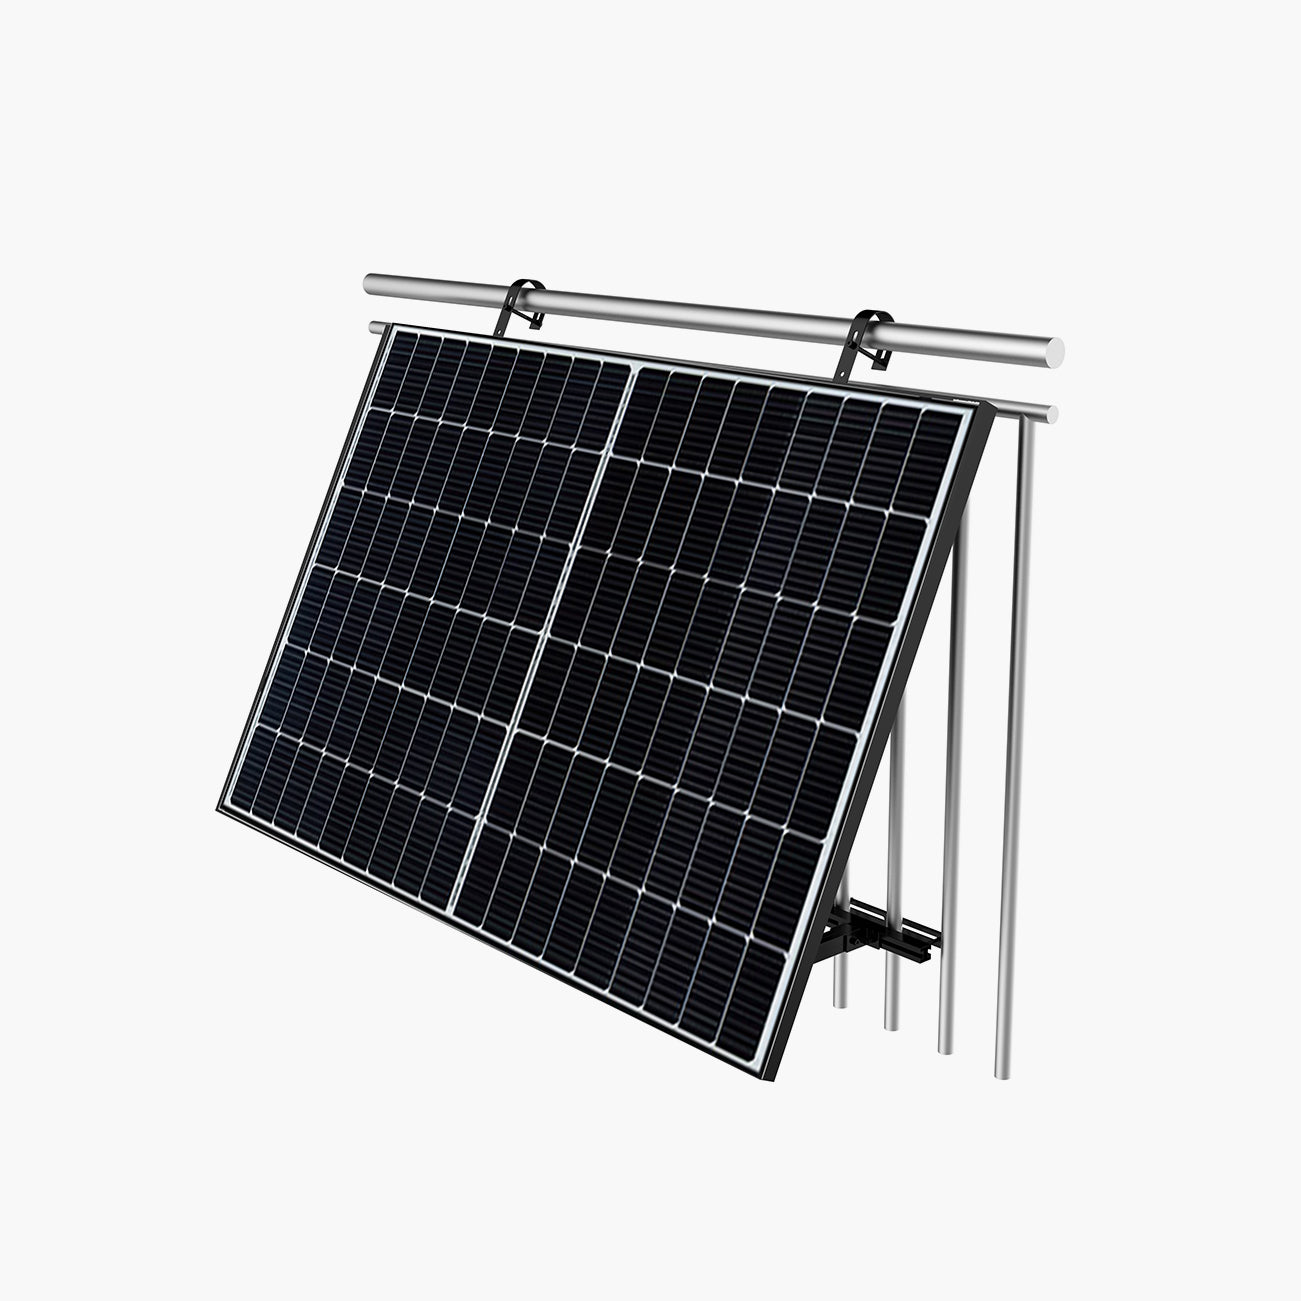 2 Painéis Solares de Varanda (2x425W) com Inversor 800W e Suportes de Fixação